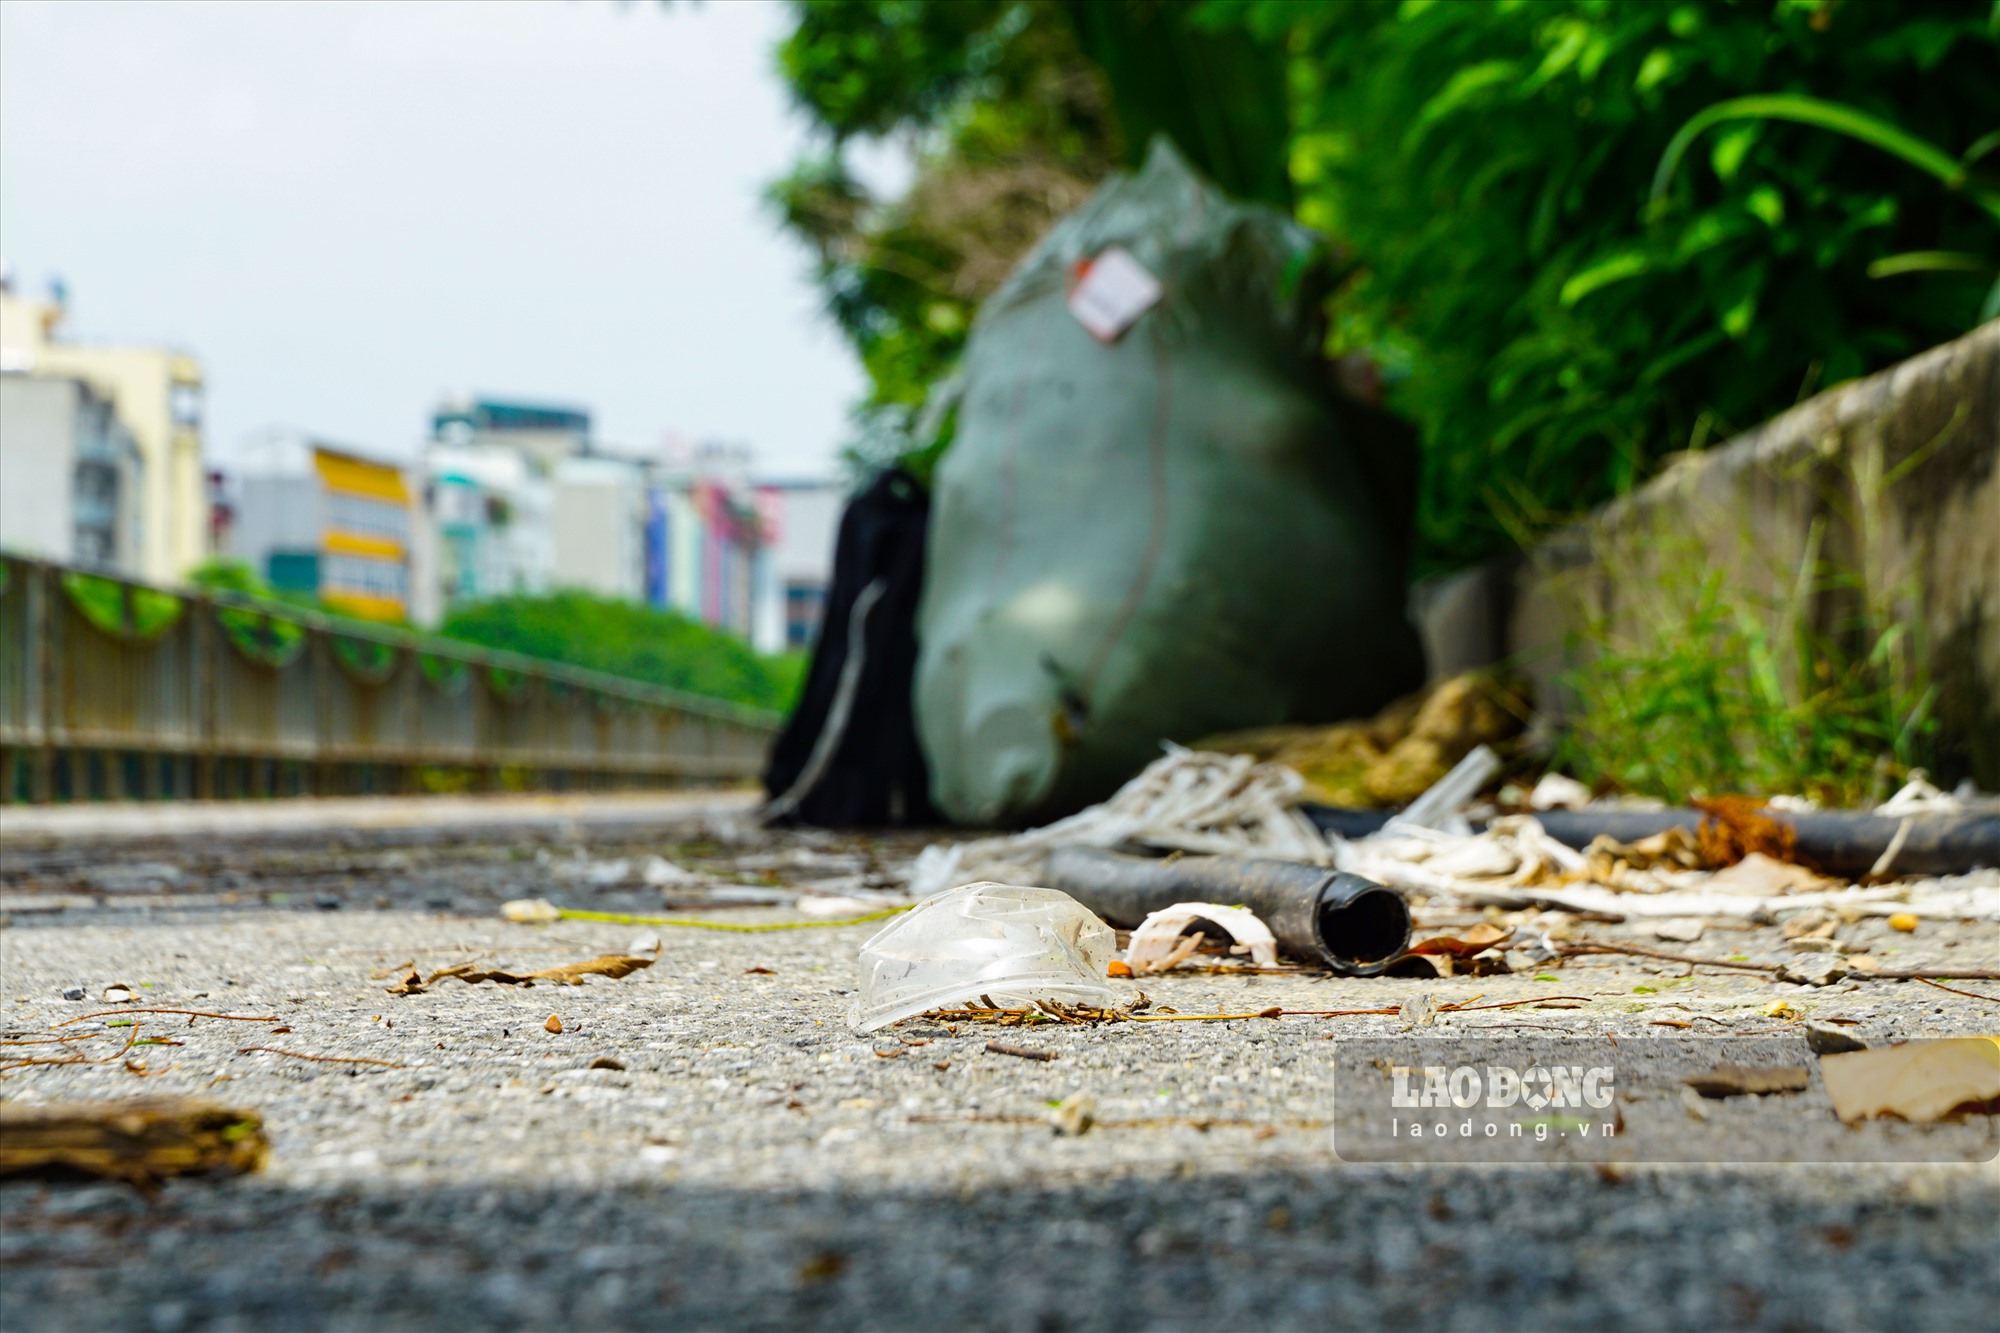 Ông Trịnh Xuân Long (trú tại 1194 đường Láng) than thở: “Đường đi bộ nhưng bị một số đối tượng coi như điểm tập kết rác thải. Đi bộ tập thể dục tại khu vực này khá bất tiện vì ngoài rác thải, tình trạng xú uế bừa bãi, mùi hôi thối cũng xông lên nồng nặc”.